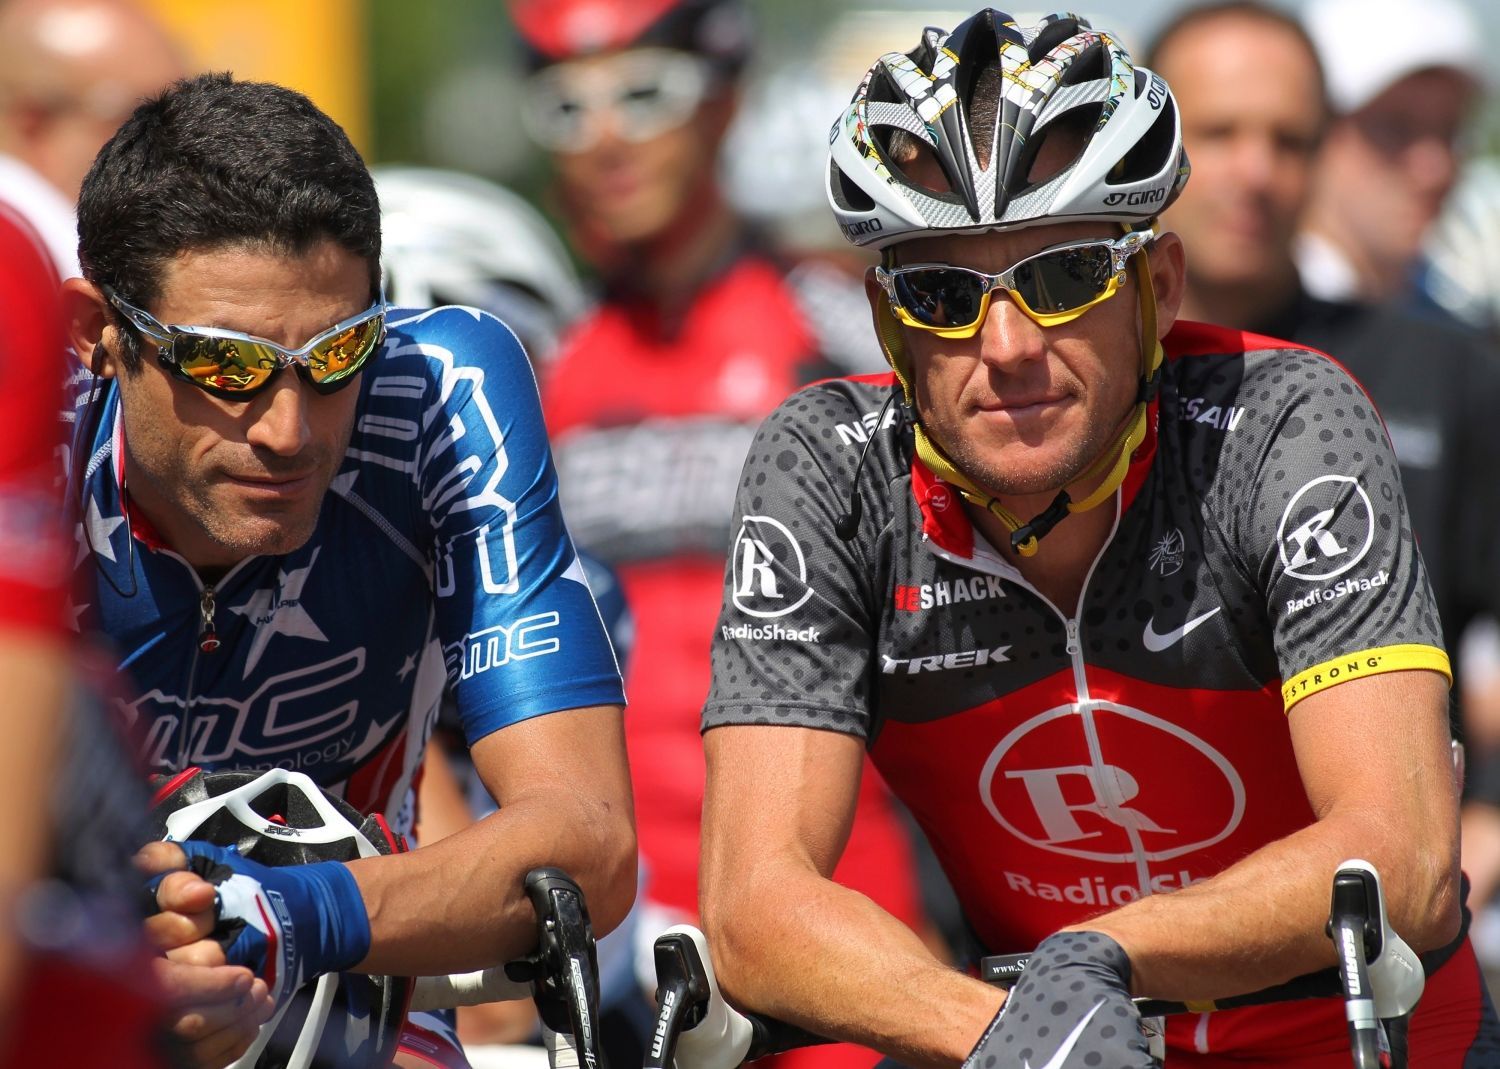 Americký cyklista Lance Armstrong (vpravo) sleduje objektiv s Georgem Hincapiem před startem Kalifornské tour 2010.